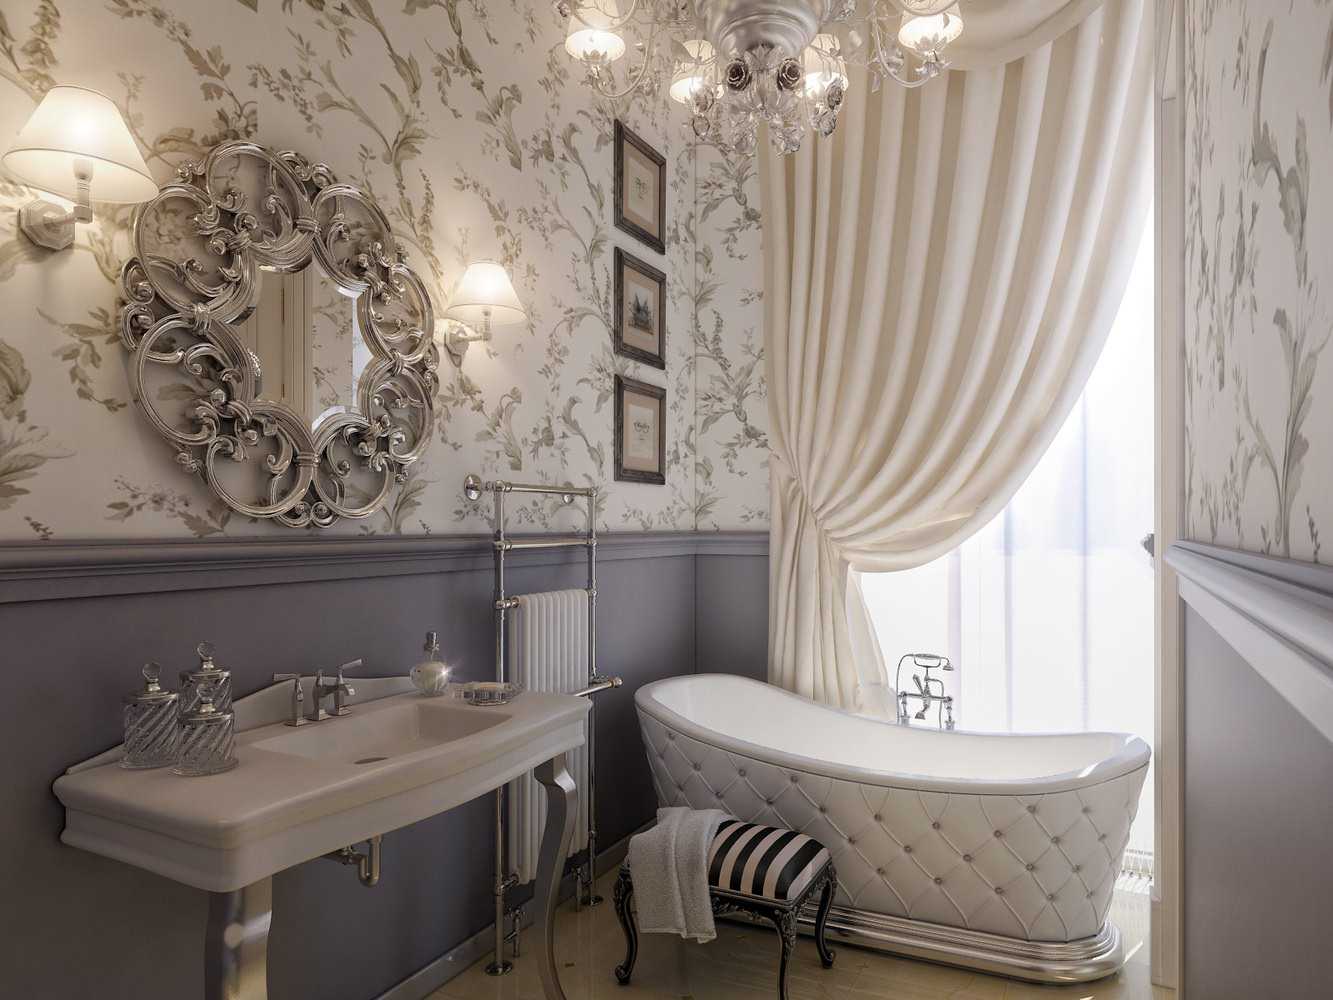 version du design lumineux de la salle de bain dans un style classique